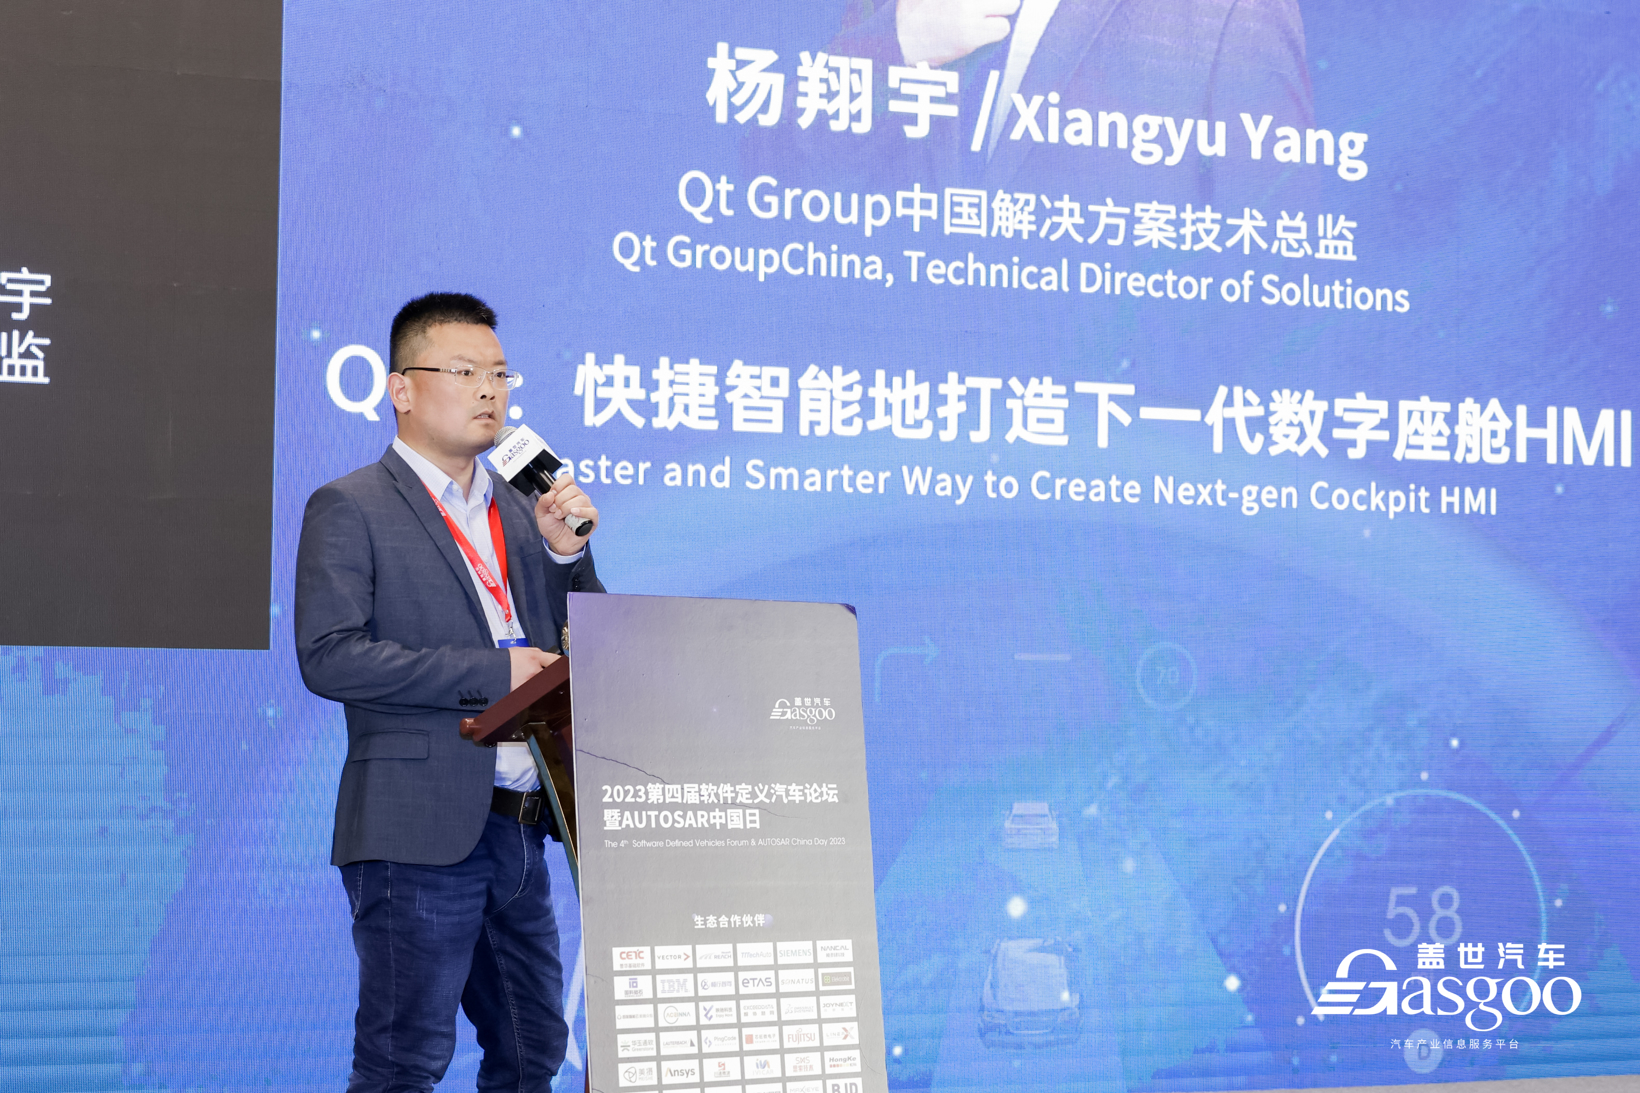 杨翔宇 | Qt Group中国解决方案技术总监